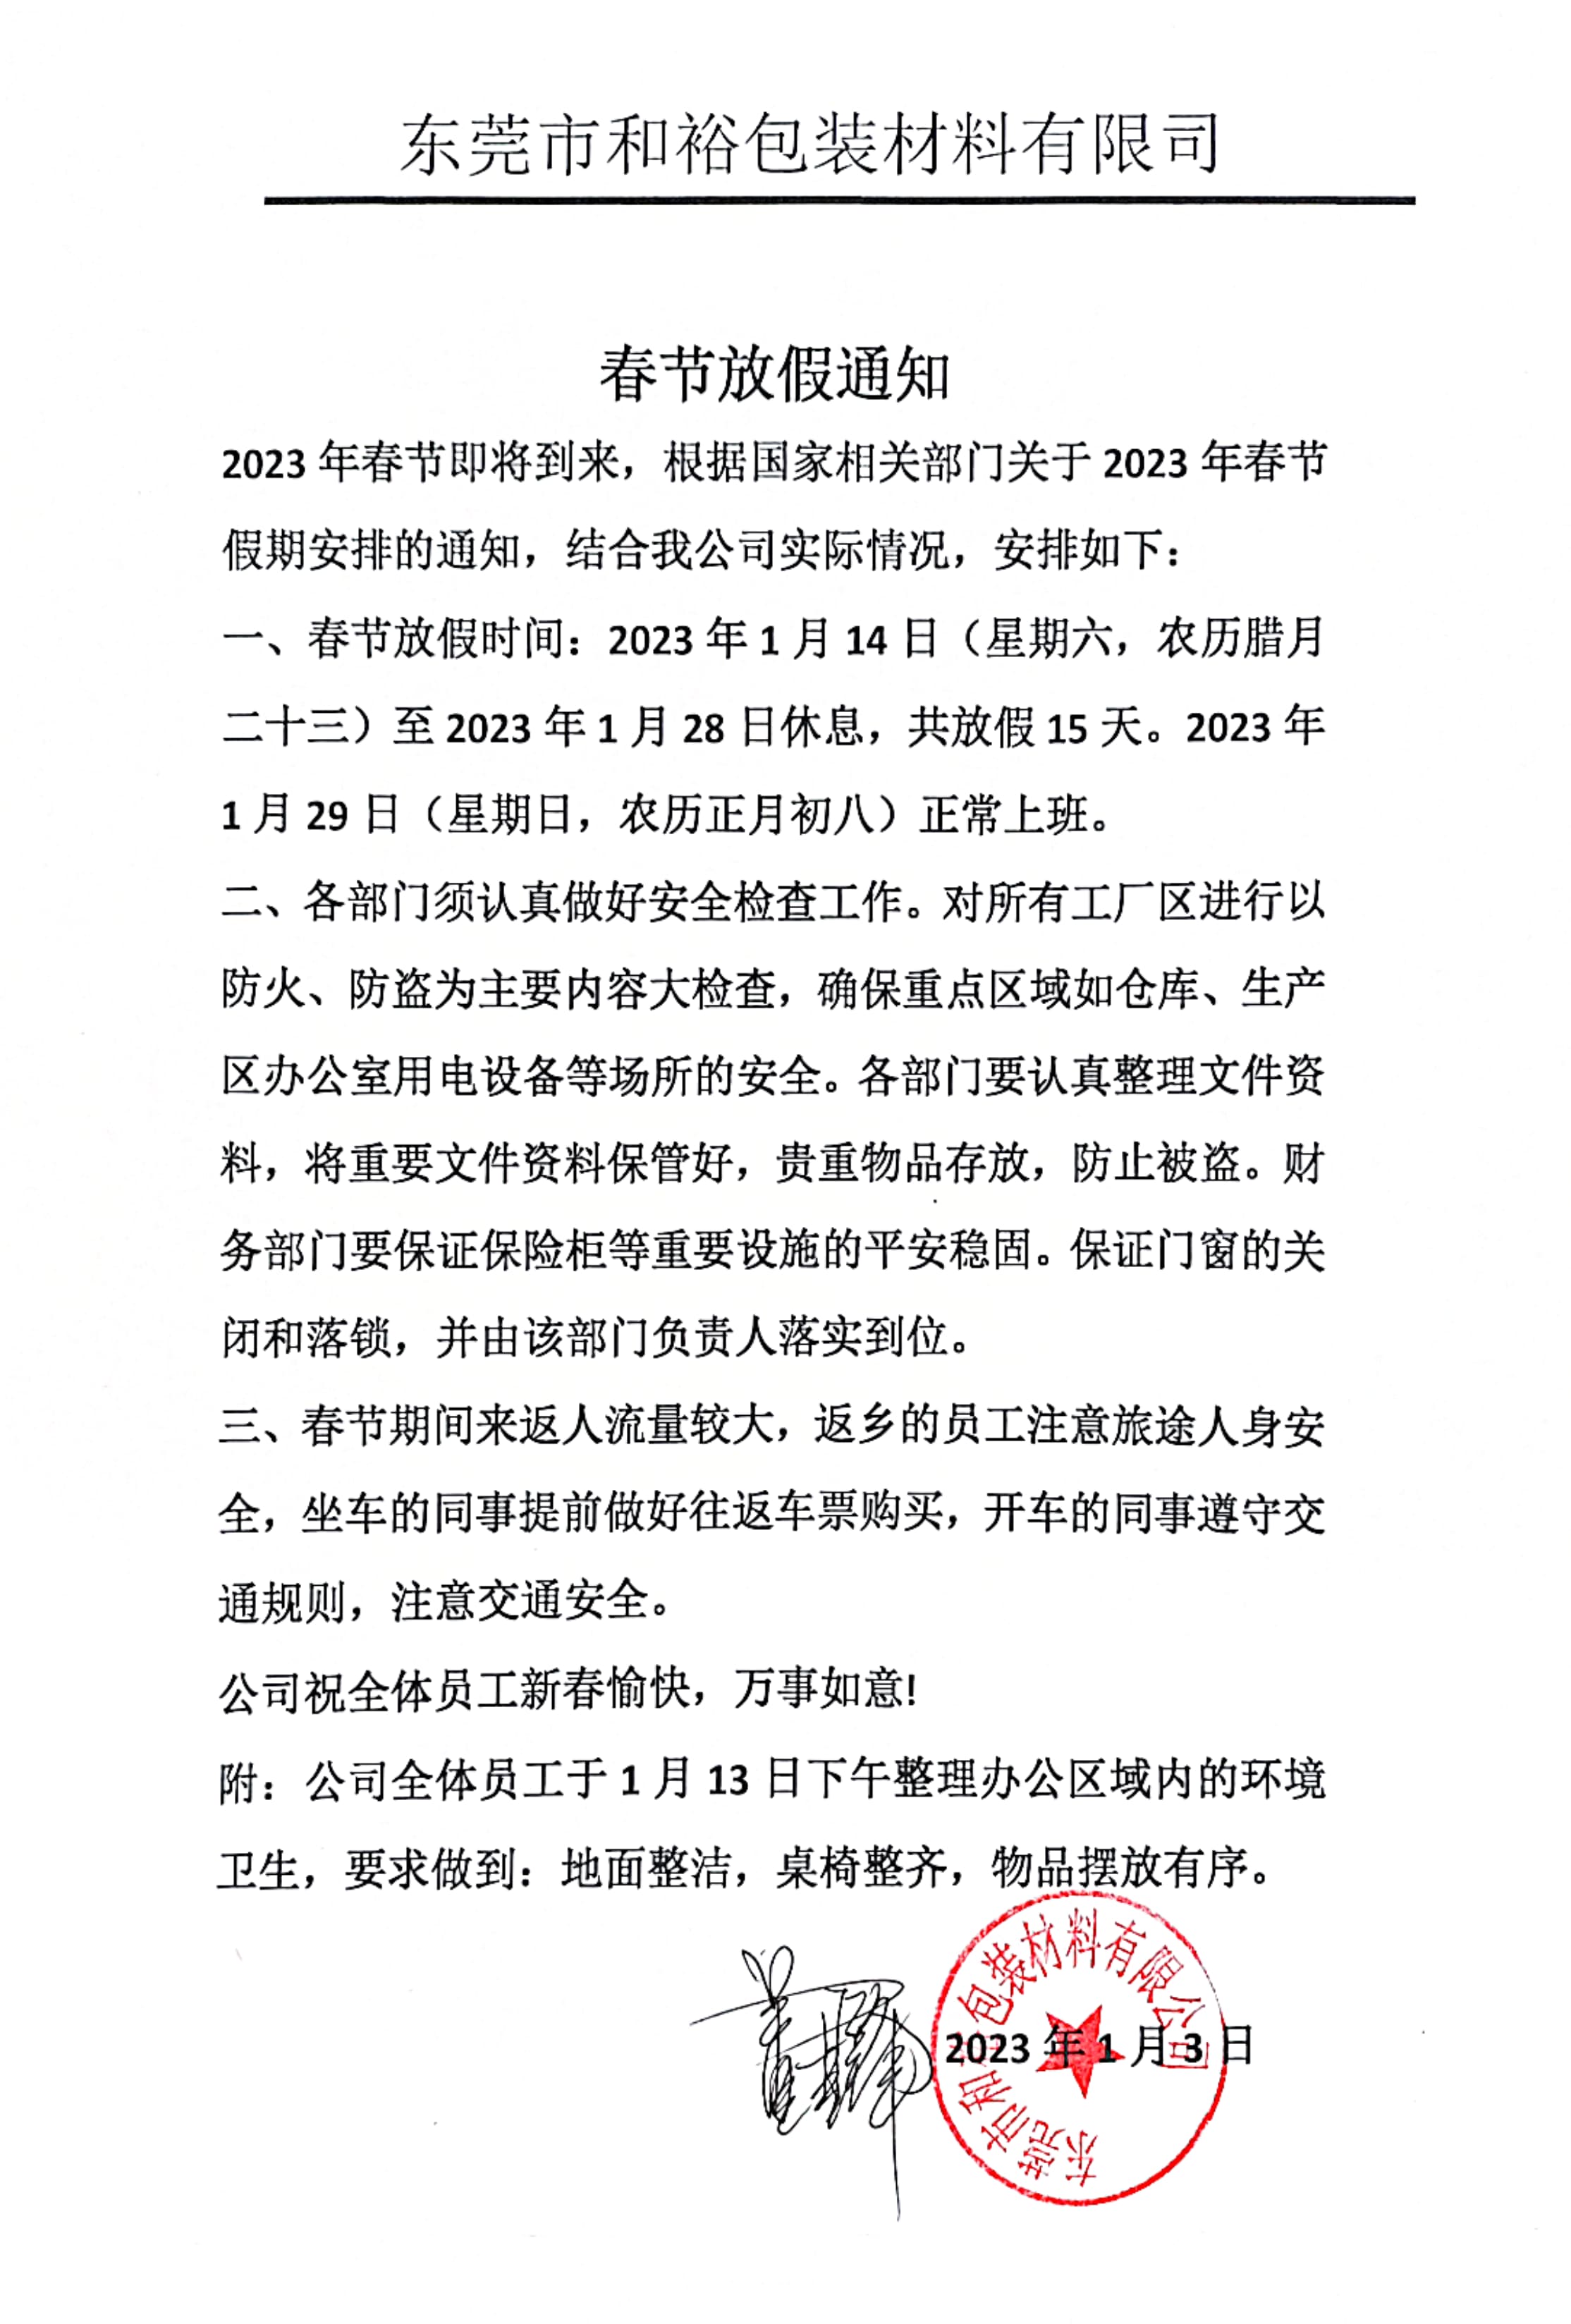 唐山市2023年和裕包装春节放假通知